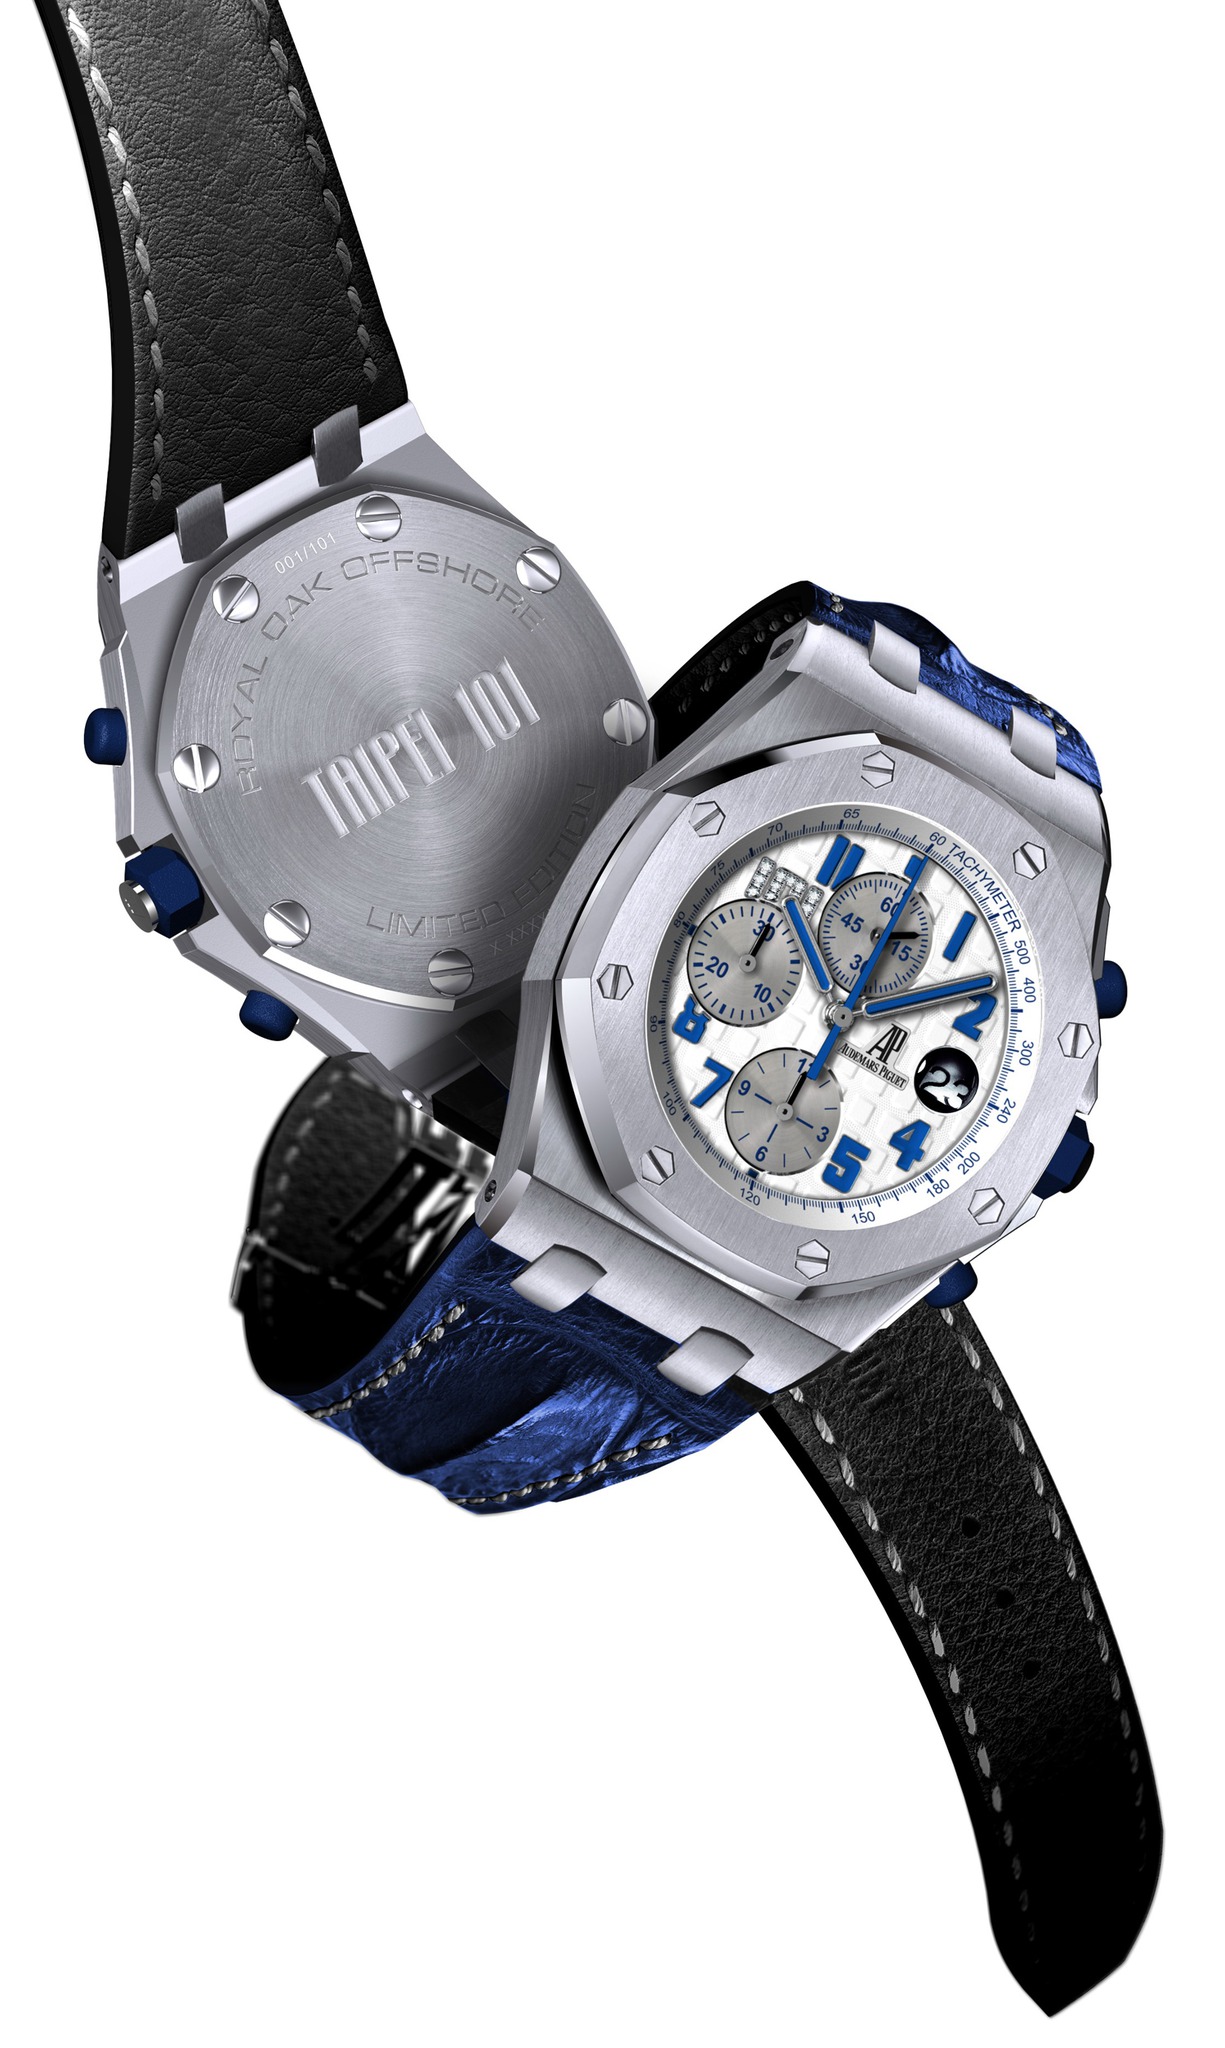 Audemars Piguet Royal Oak Offshore Taipei 101 Steel watch REF: 26197ST.OO.D305CR.01